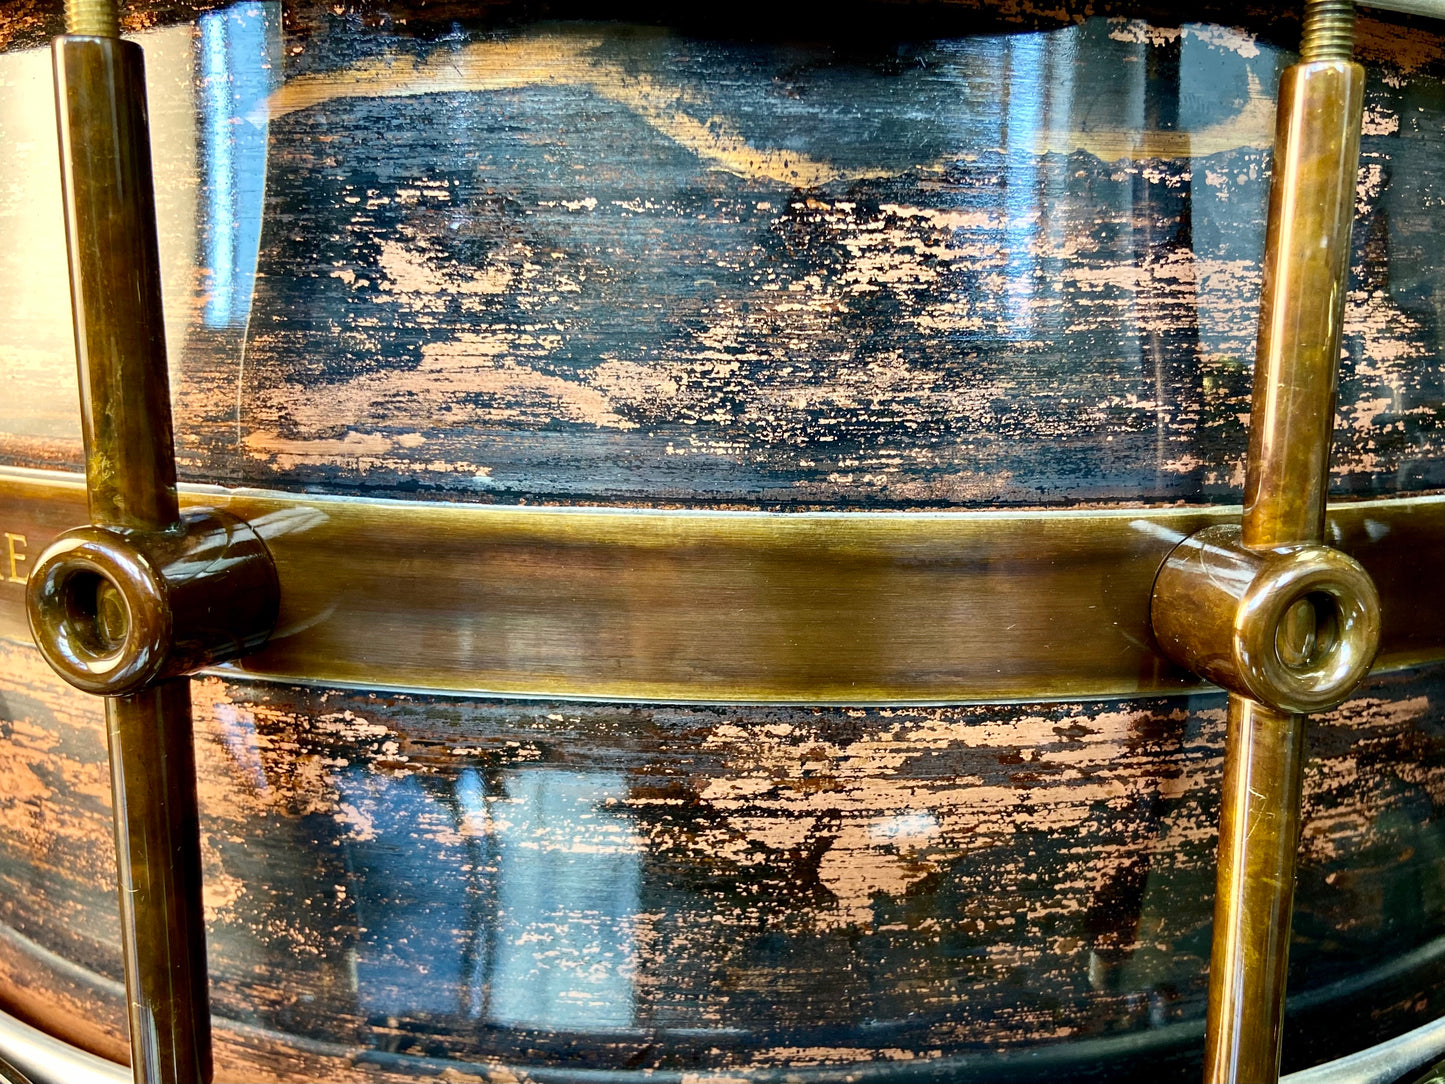 Schagerl Persephone Snare Drum 14x6.5 Copper Dark Vintage